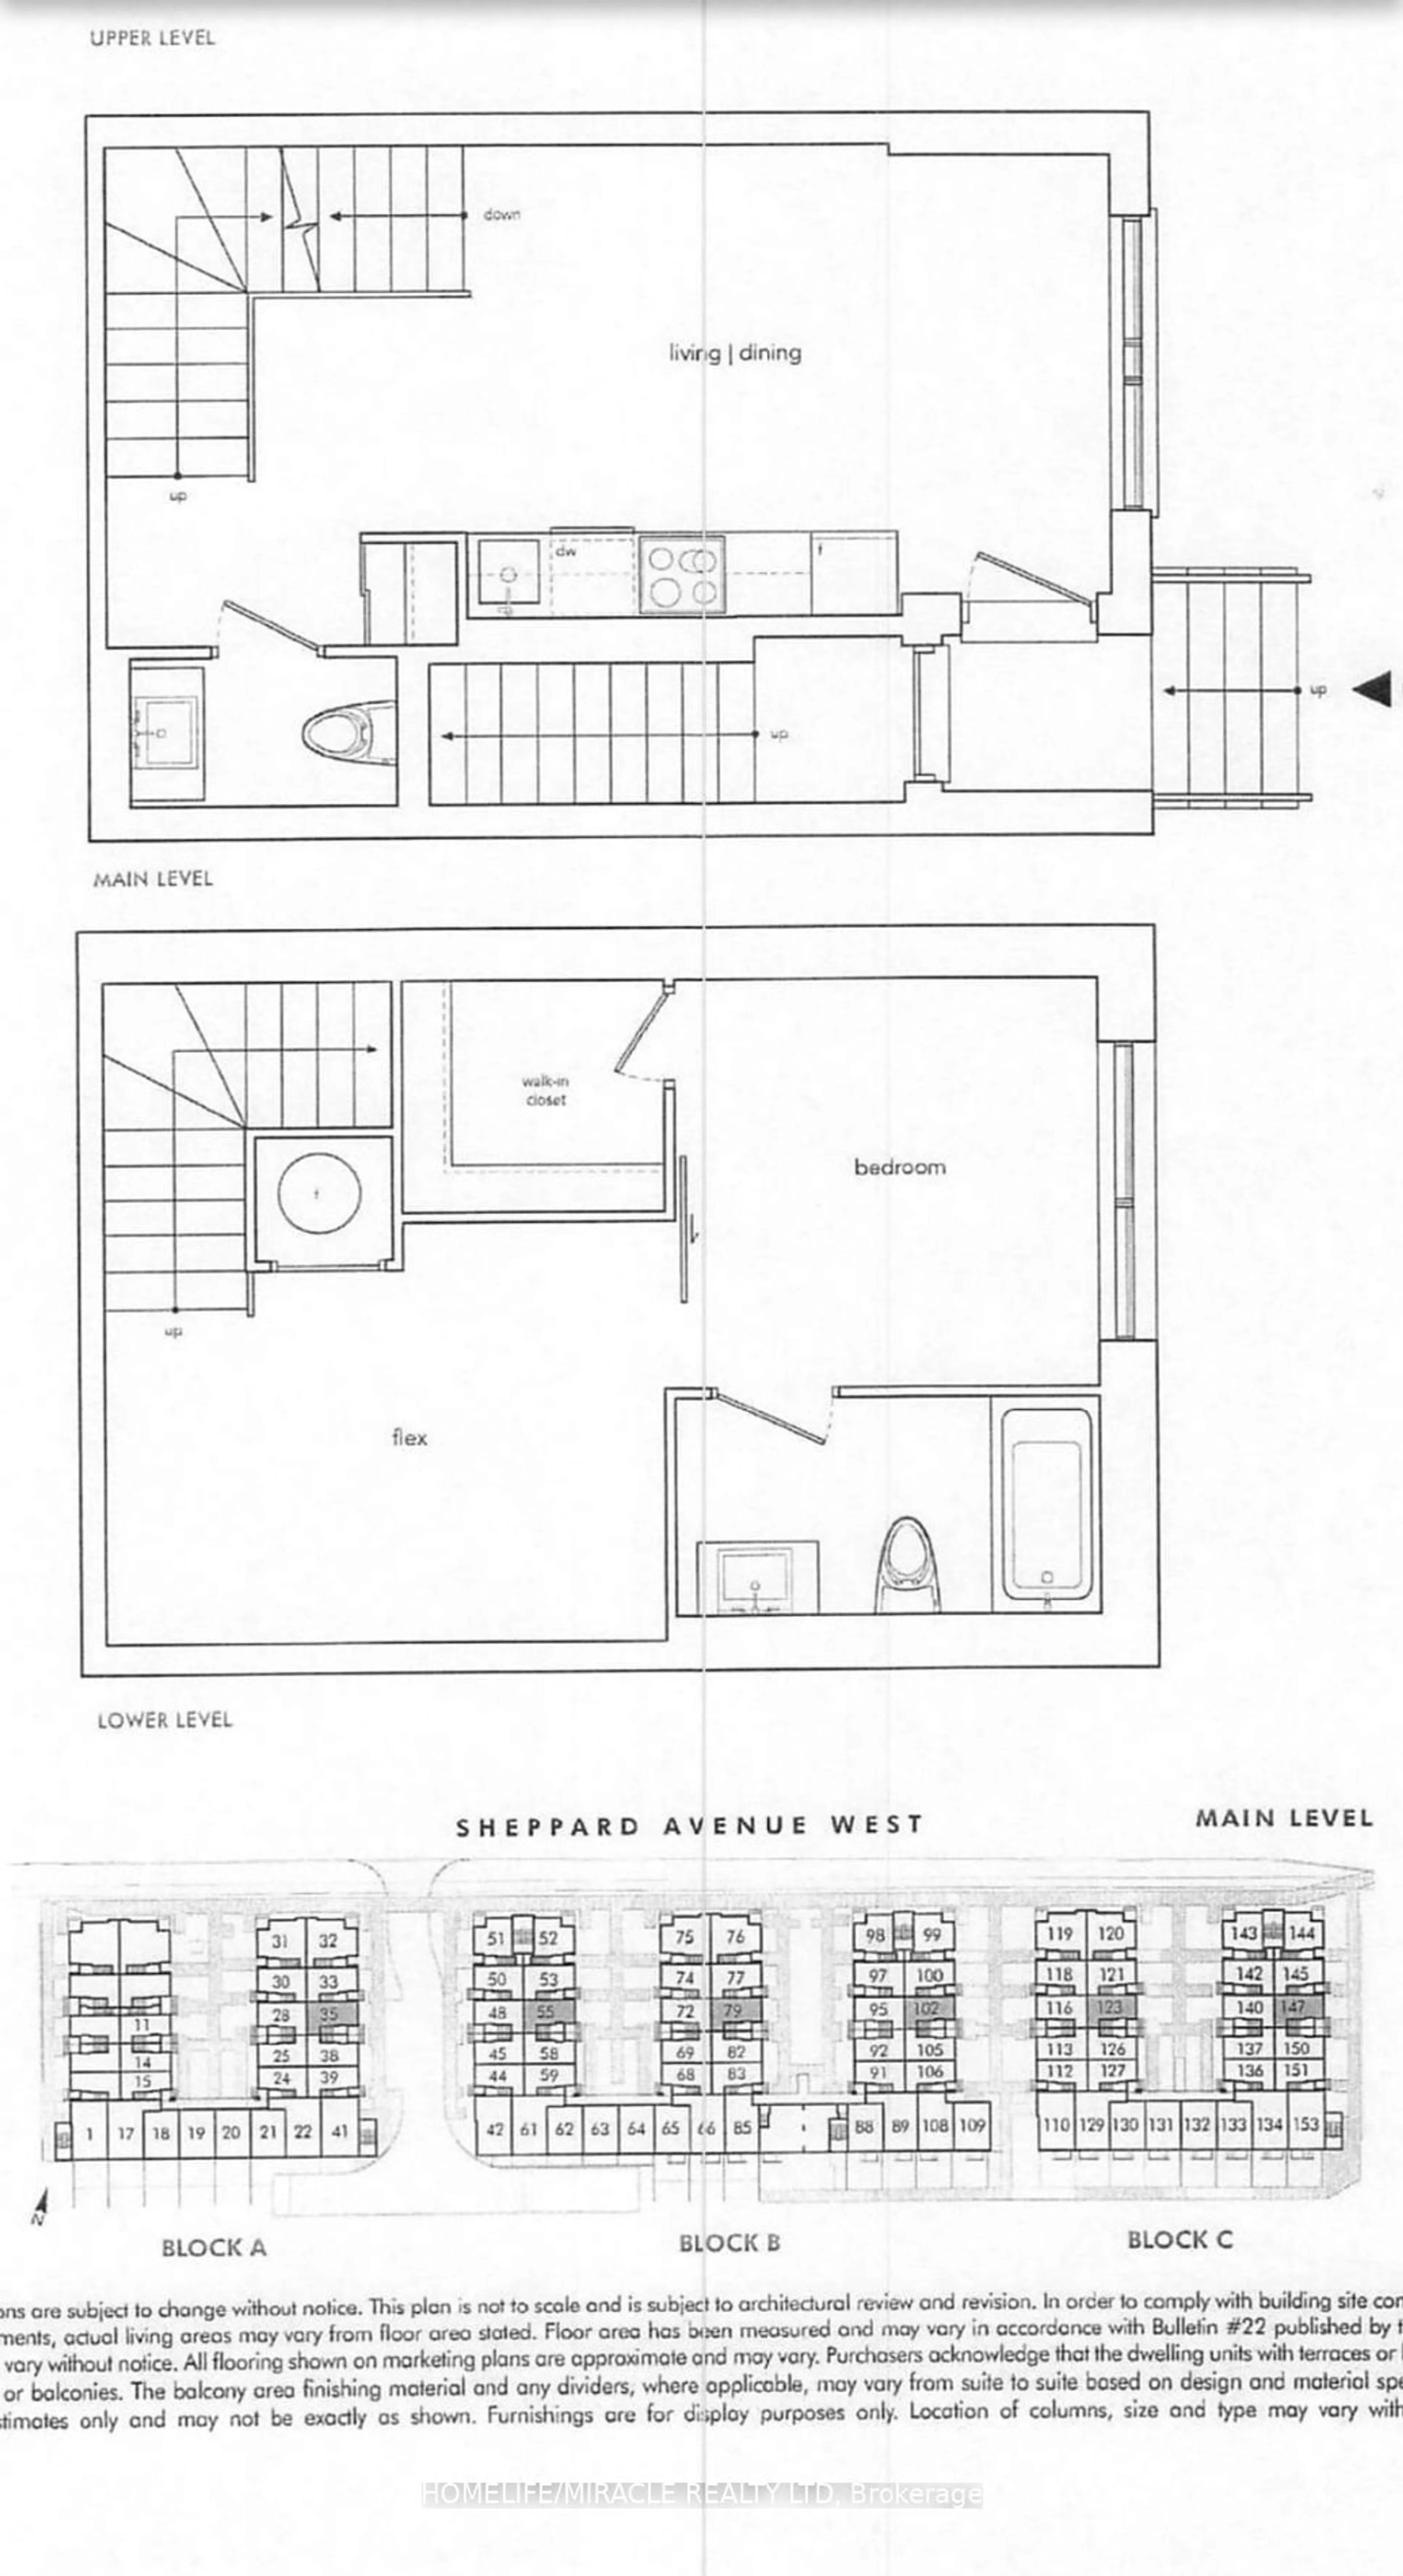 Floor plan for 861 Sheppard Ave #61, Toronto Ontario M3H 0E9